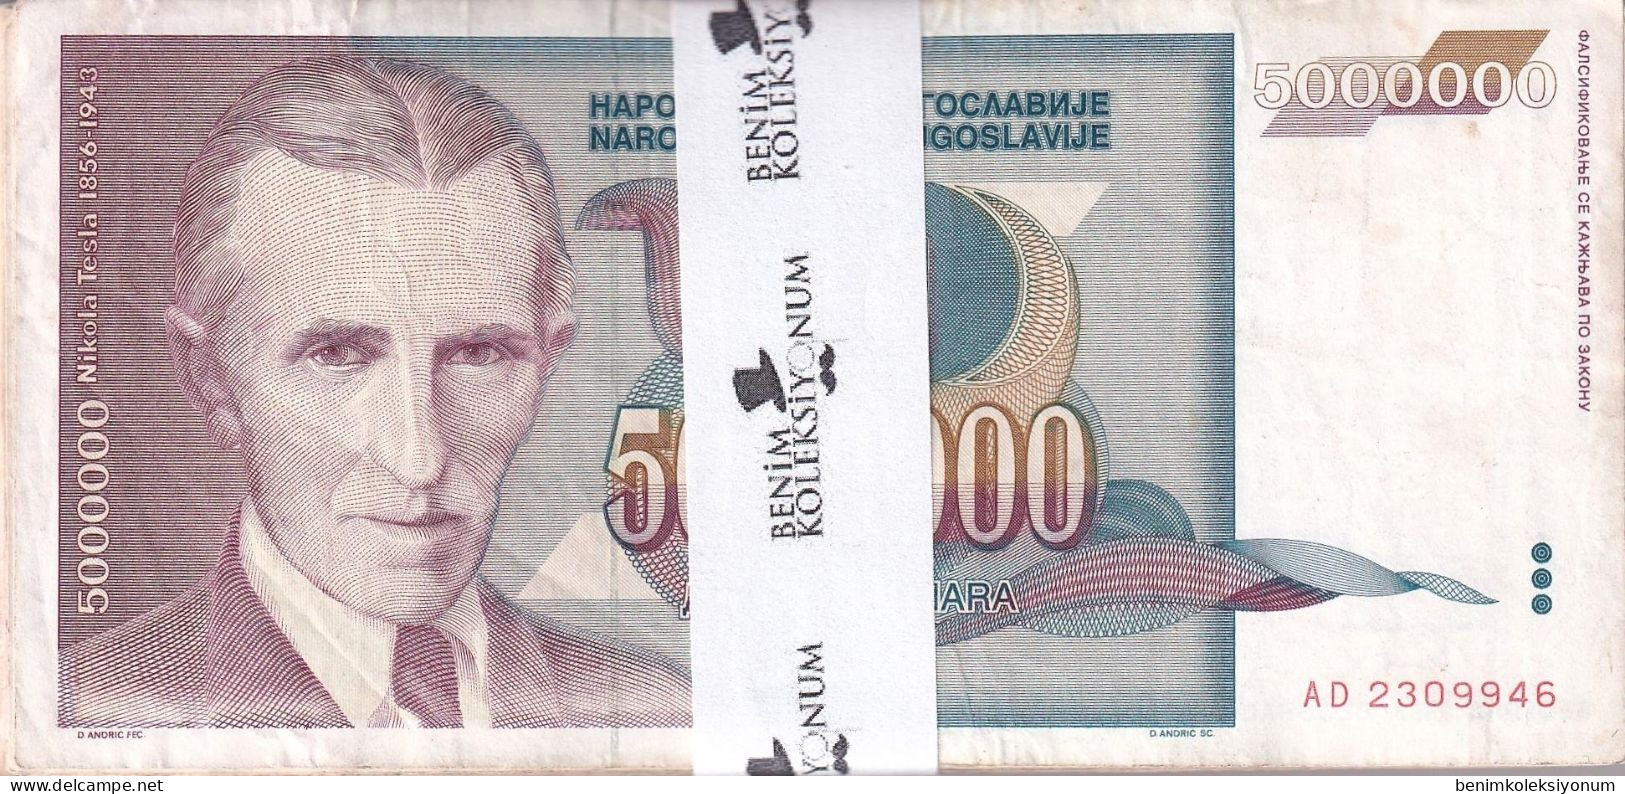 Yugoslavia 5,000,000 Dinara, 1993 P#121 F/VF Bundle - Yugoslavia